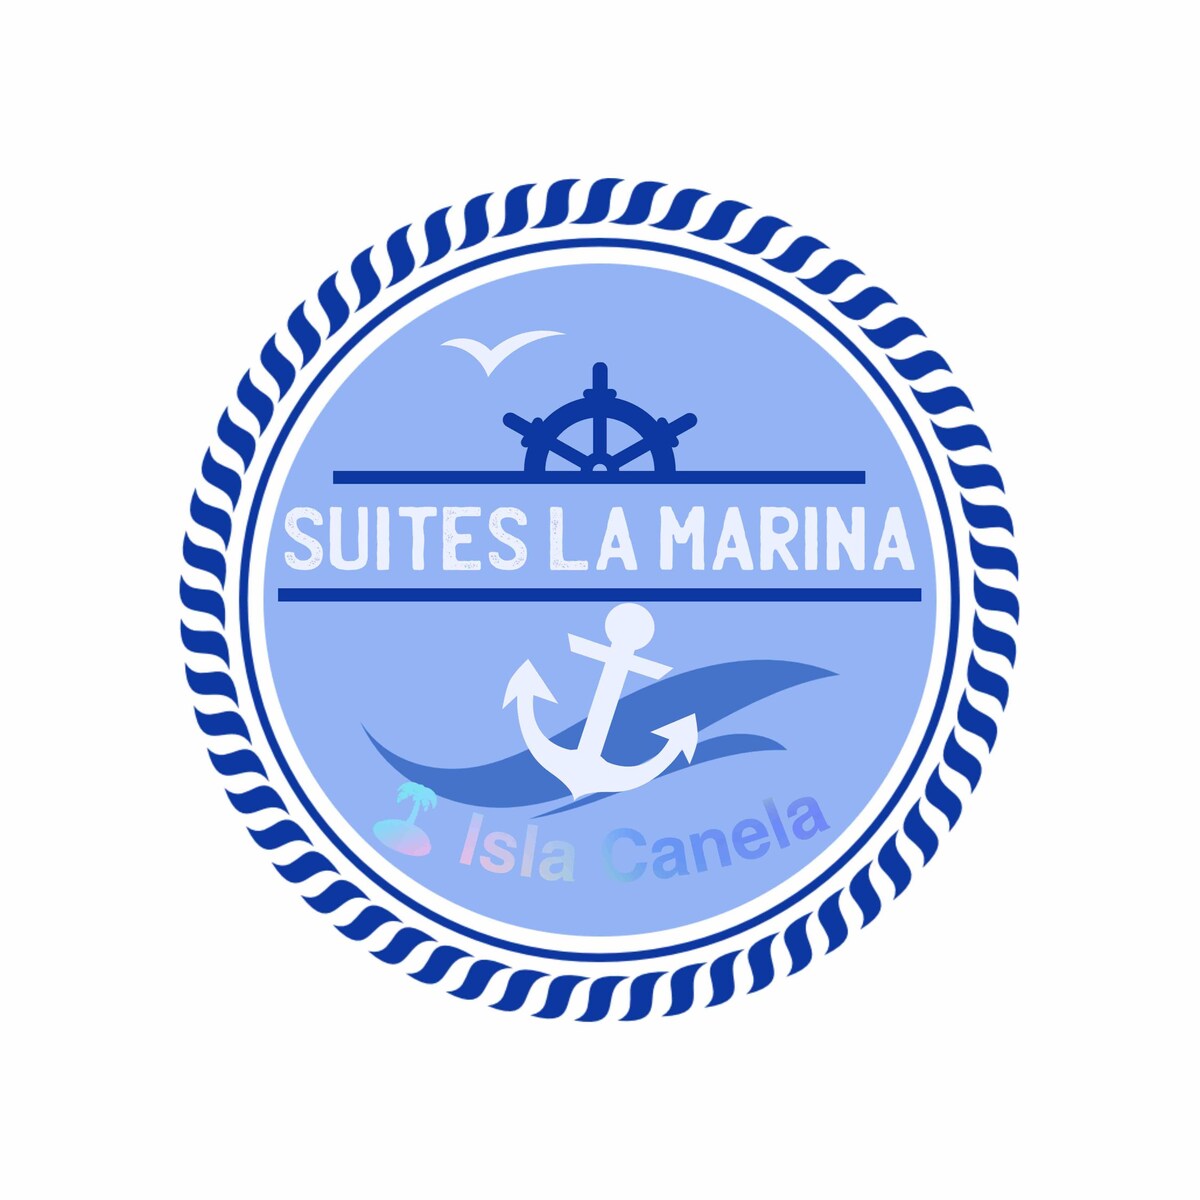 Suites La Marina de Isla Canela